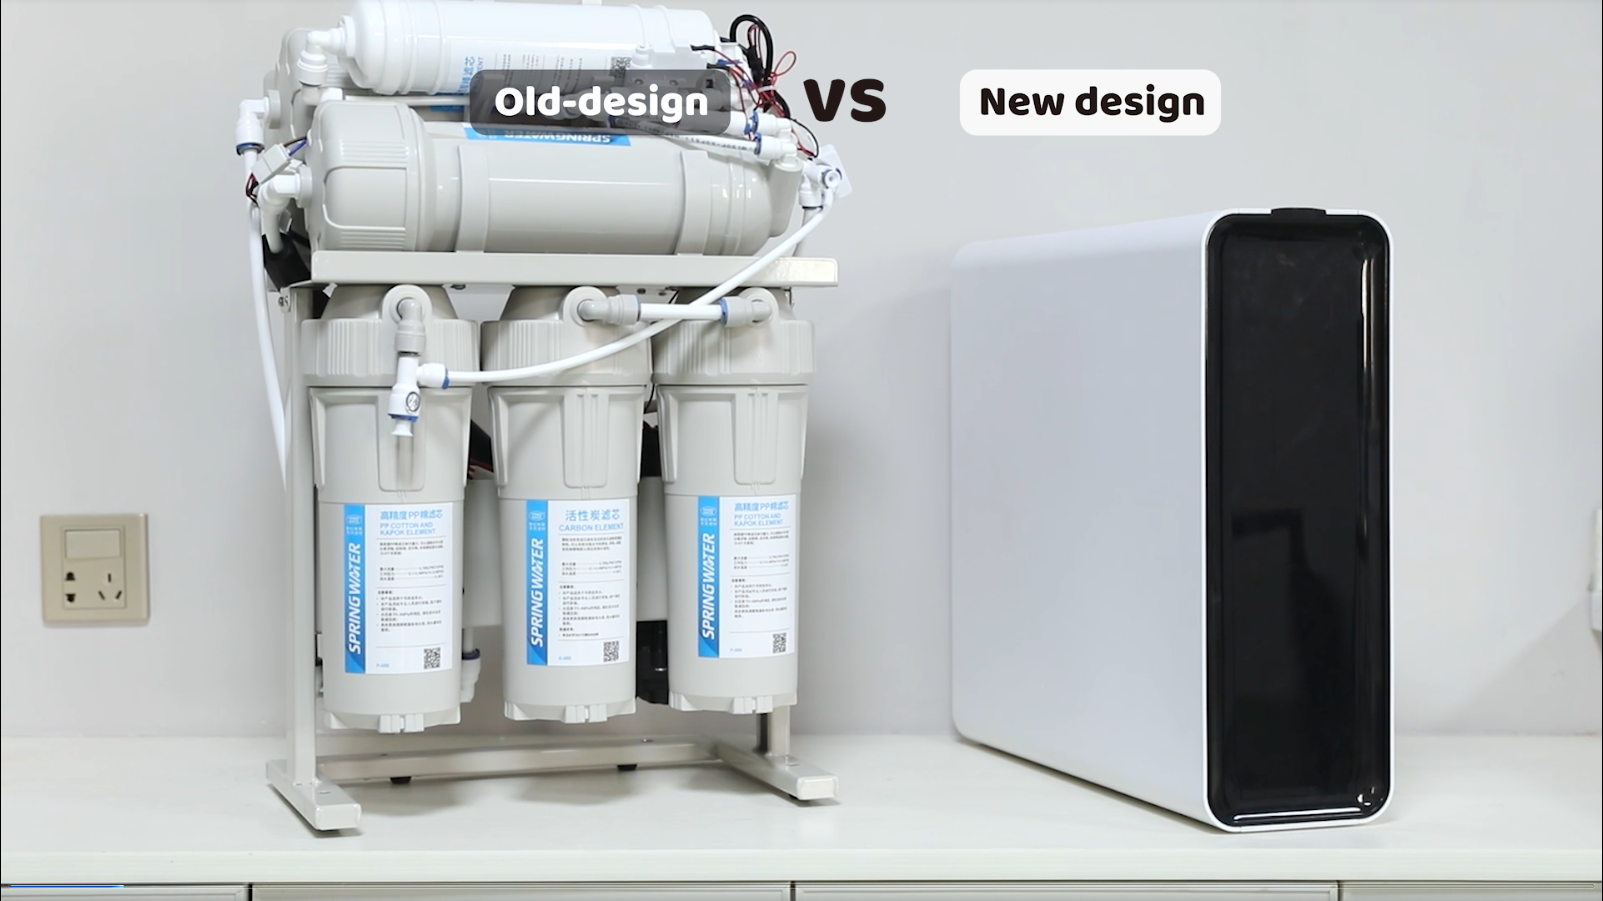 Võrrelge vana ja uue disainiga valamu all olevat veepuhastajat